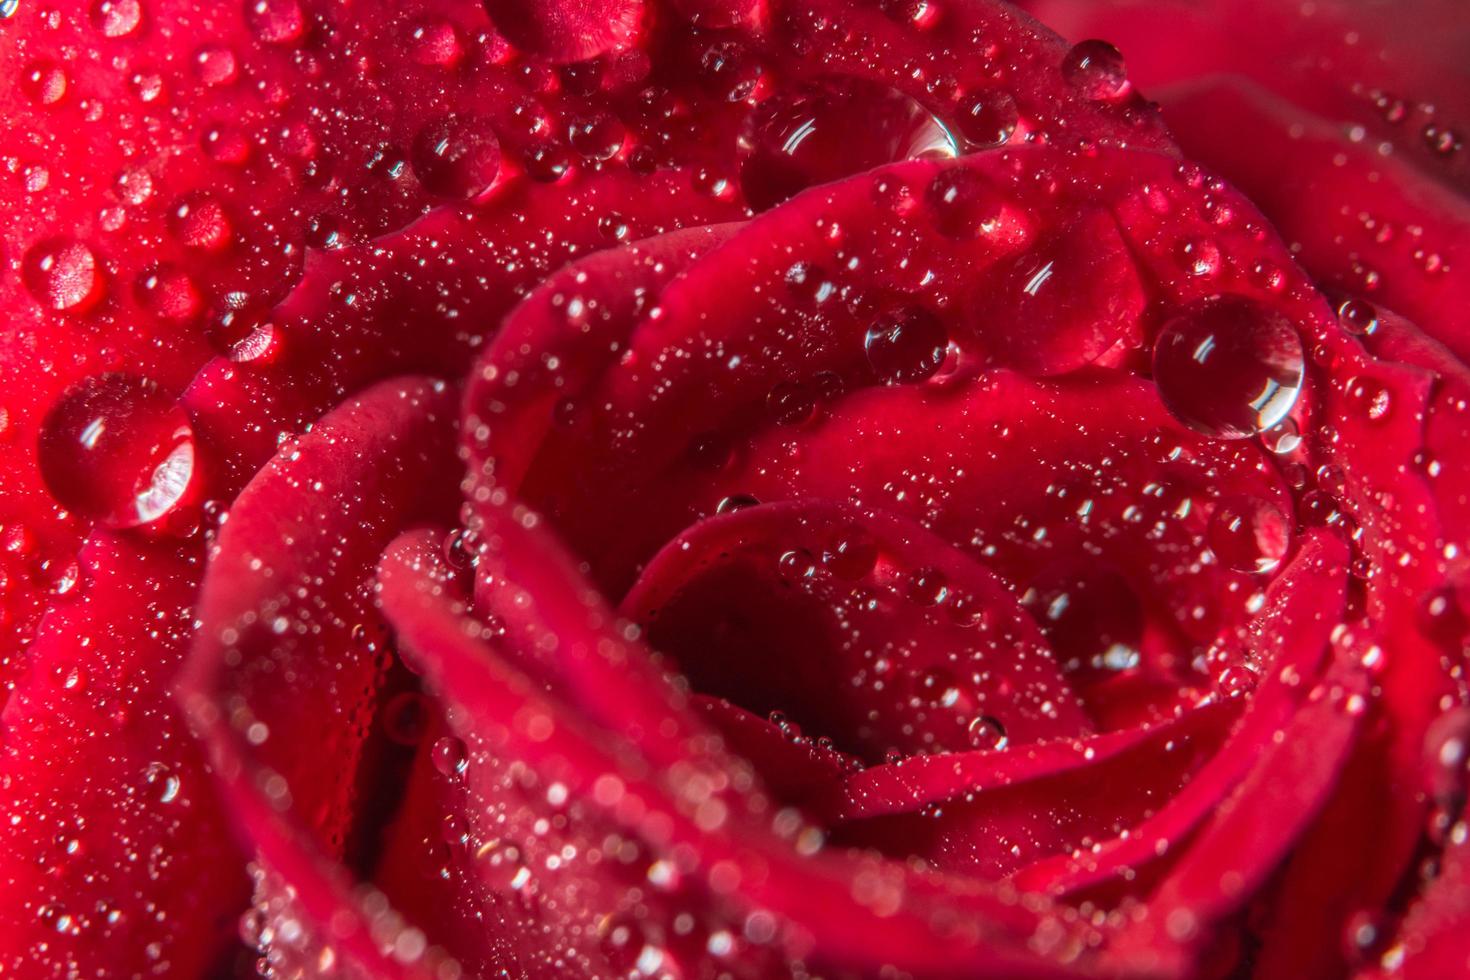 vattendroppar på en röd ros foto